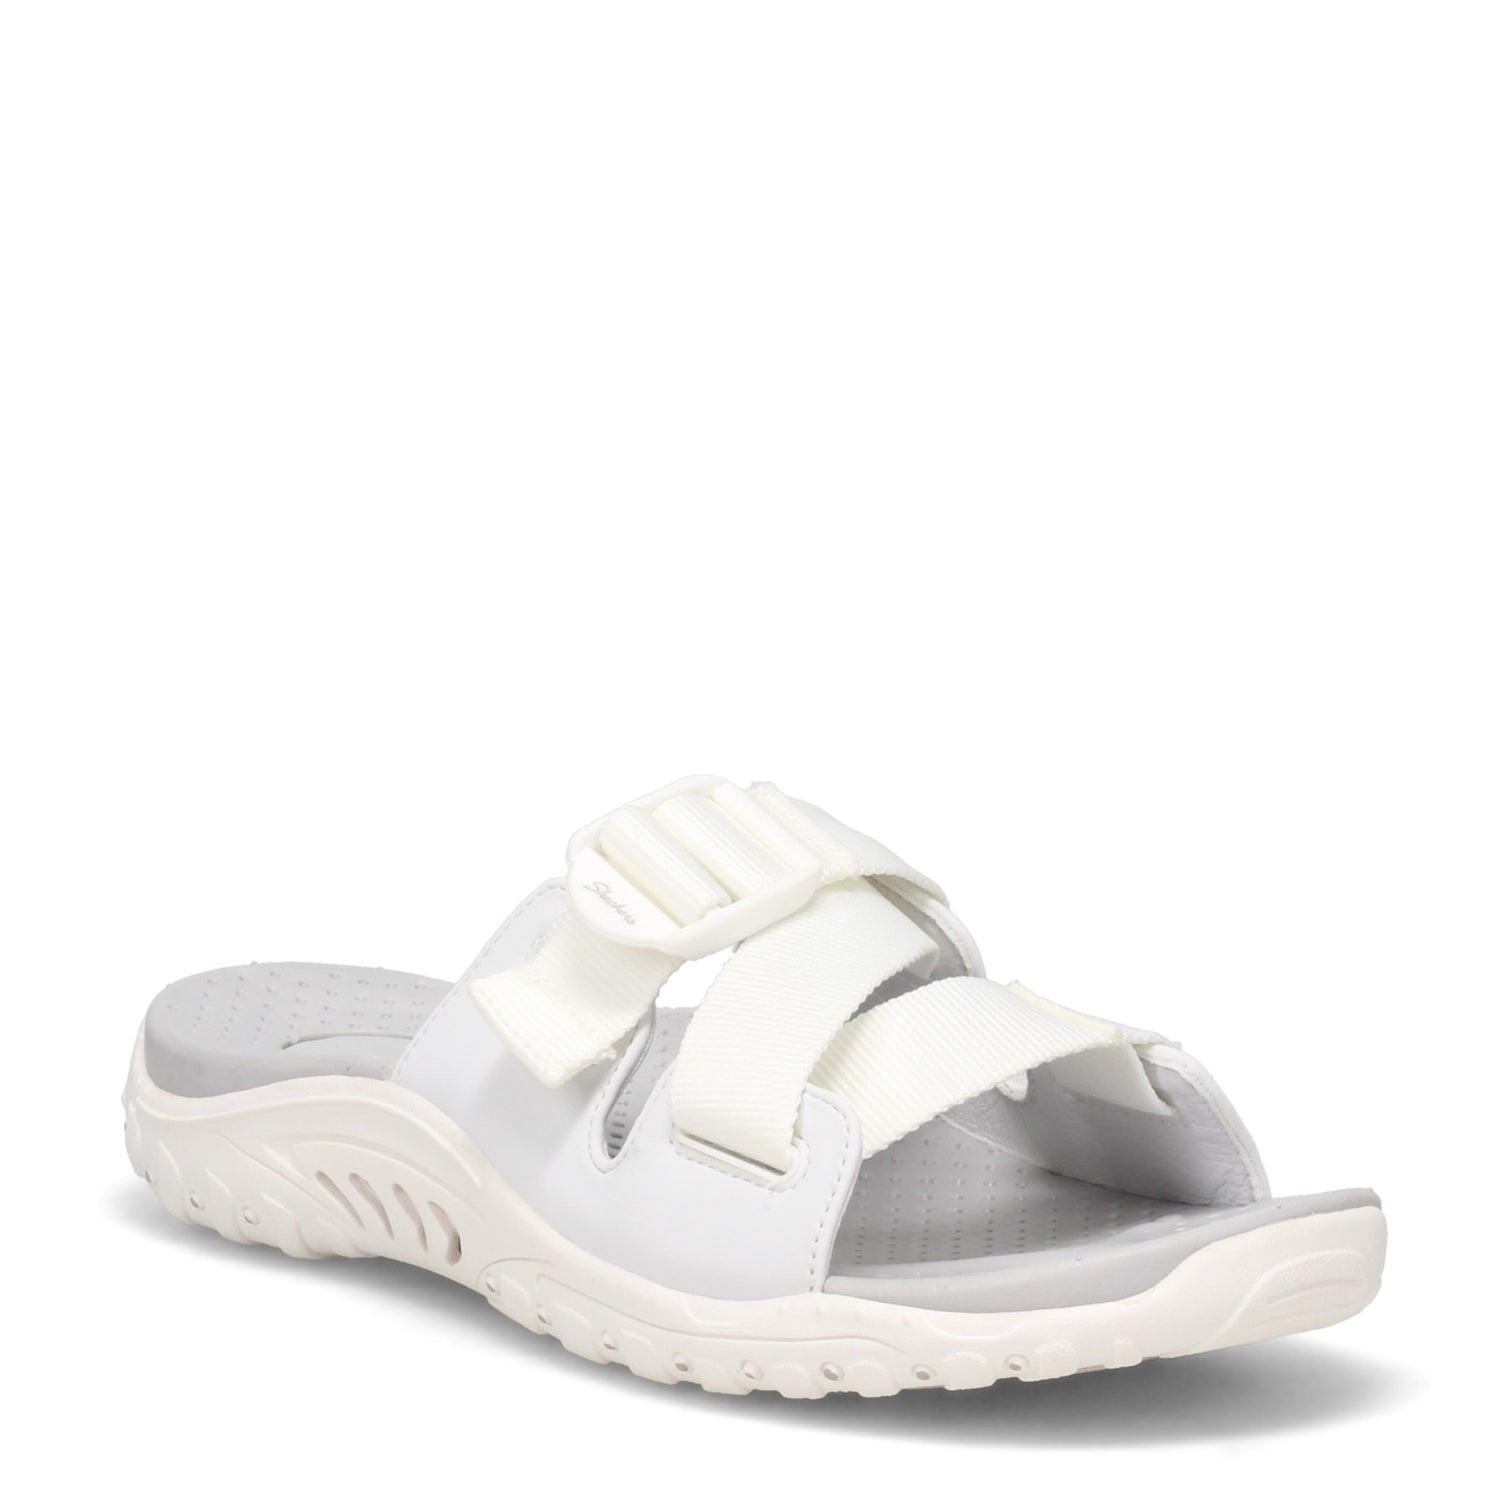 Peltz Shoes  Women's Skechers Reggae - Better Alone Sandal White 163291-WHT